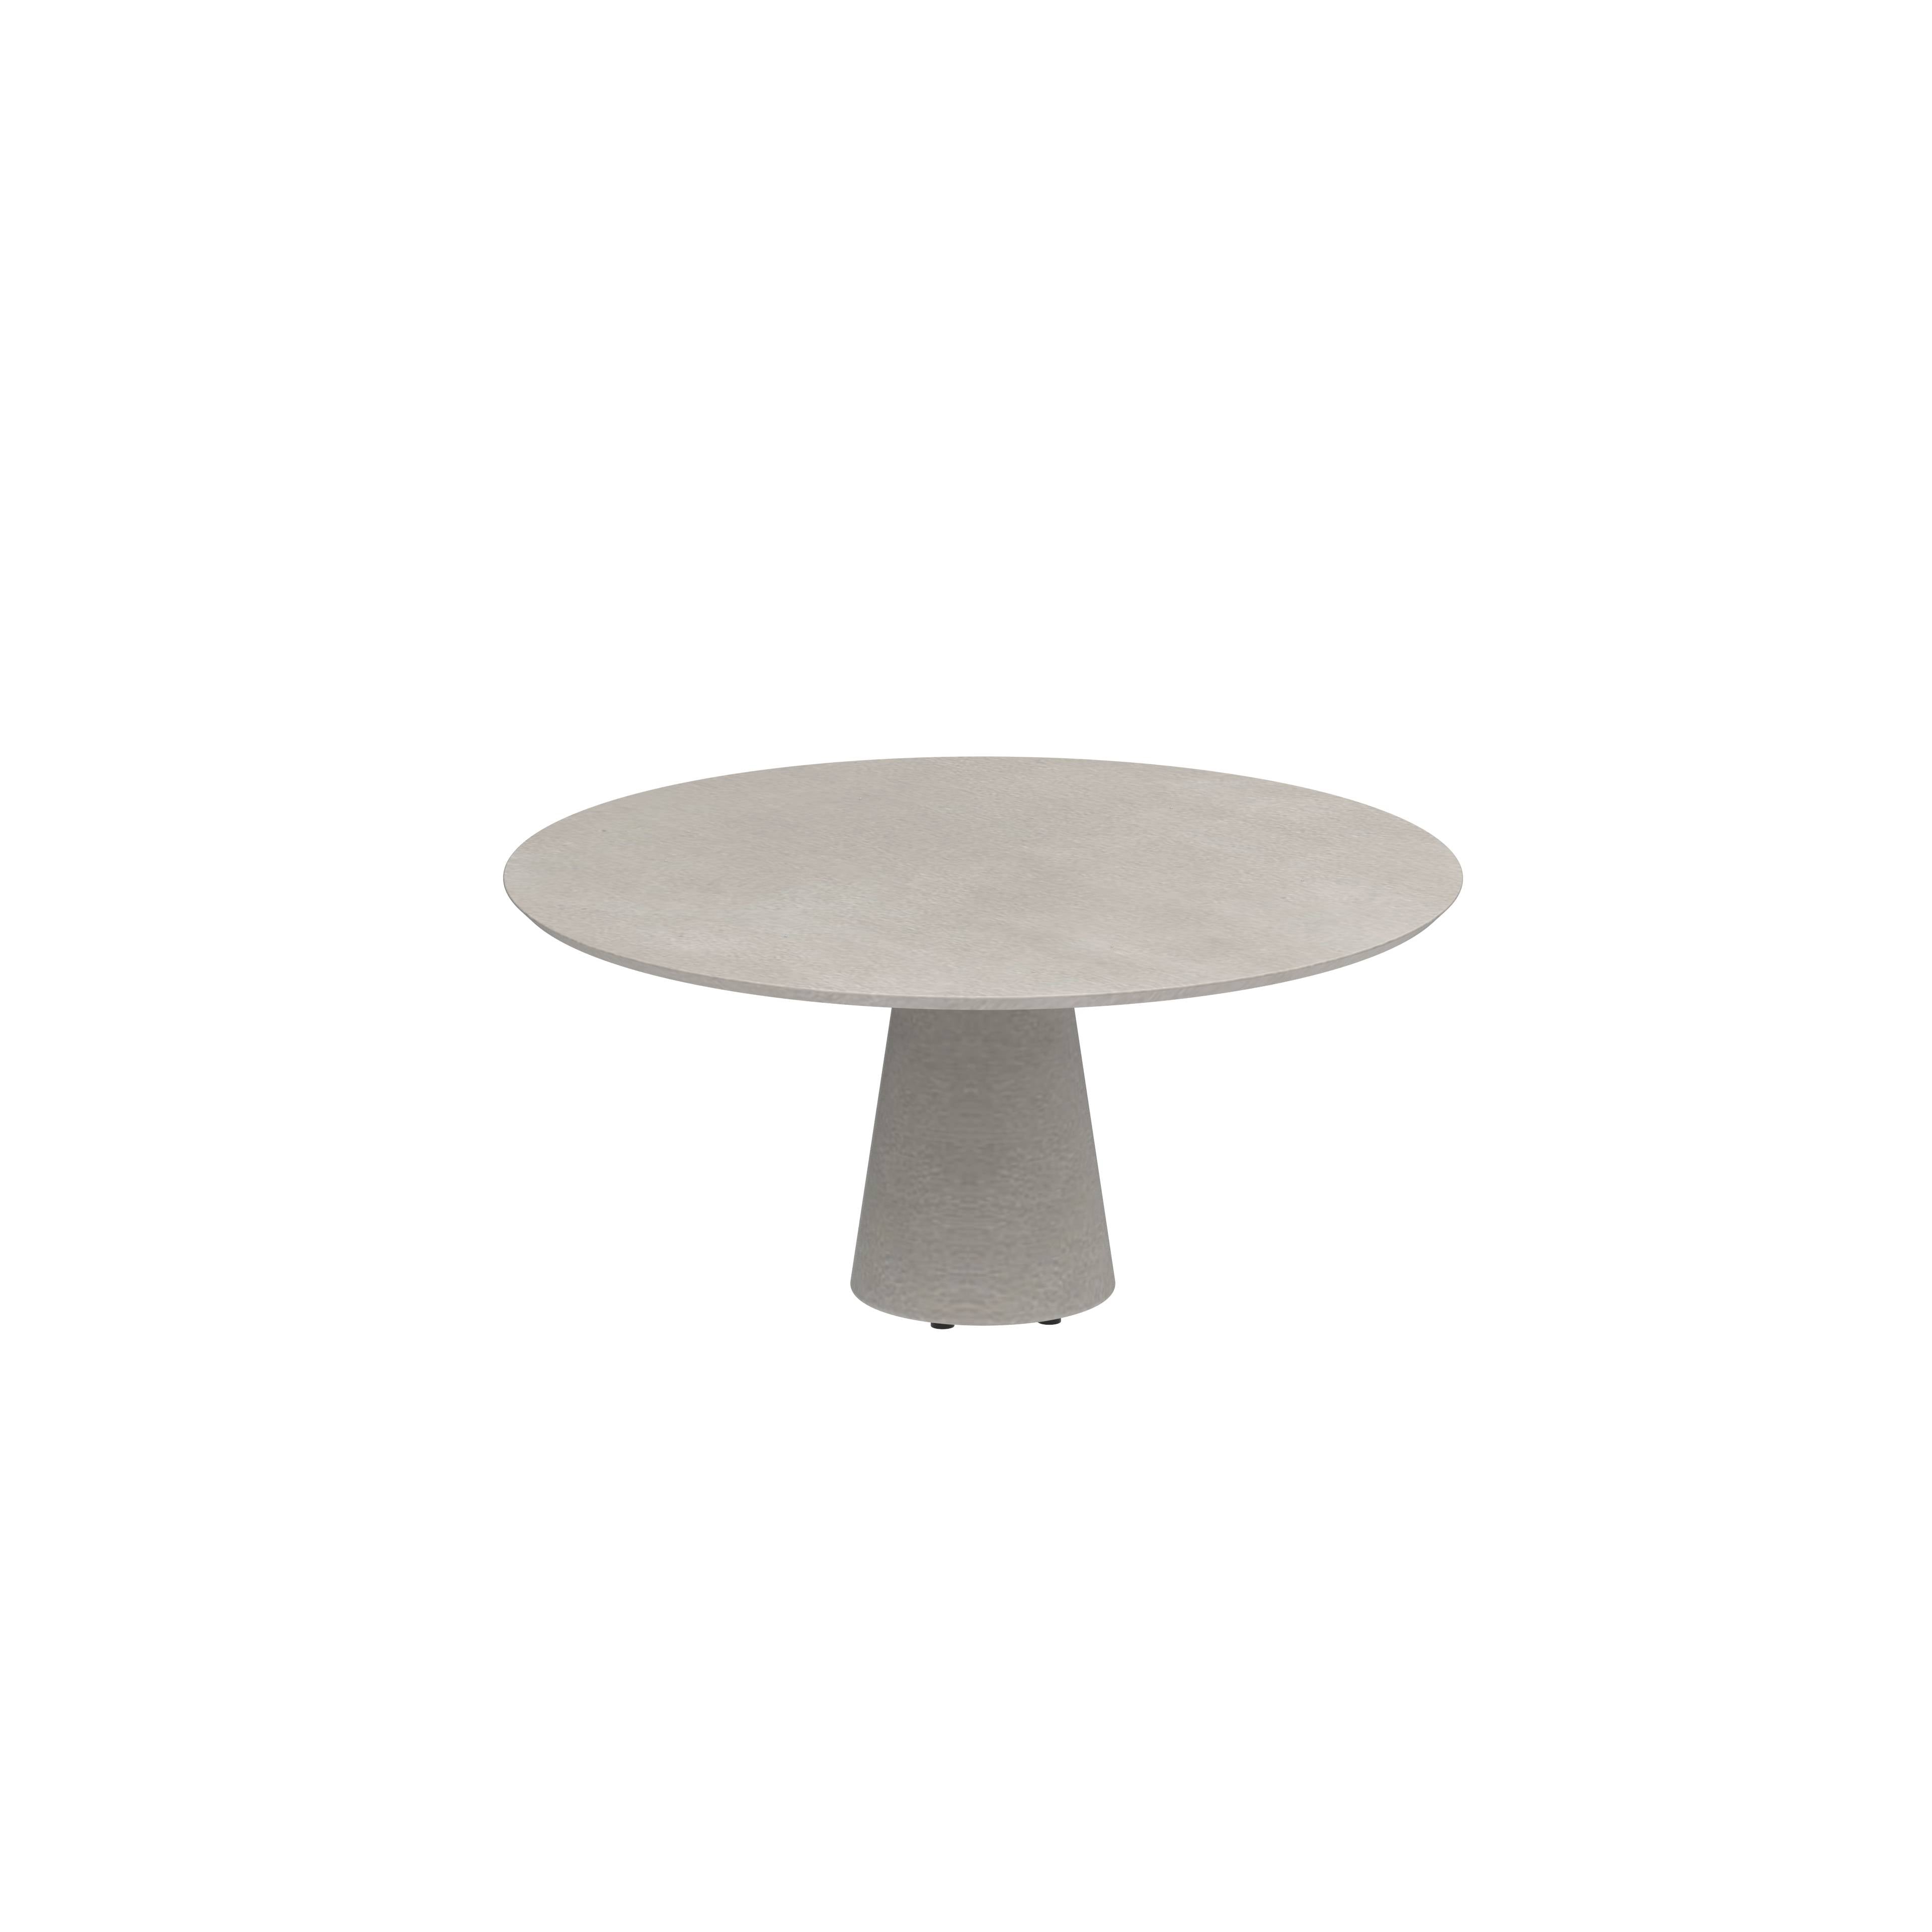 Conix Table Round Ø 160cm Legs Concrete Cement Grey - Tabletop Concrete Cement Grey